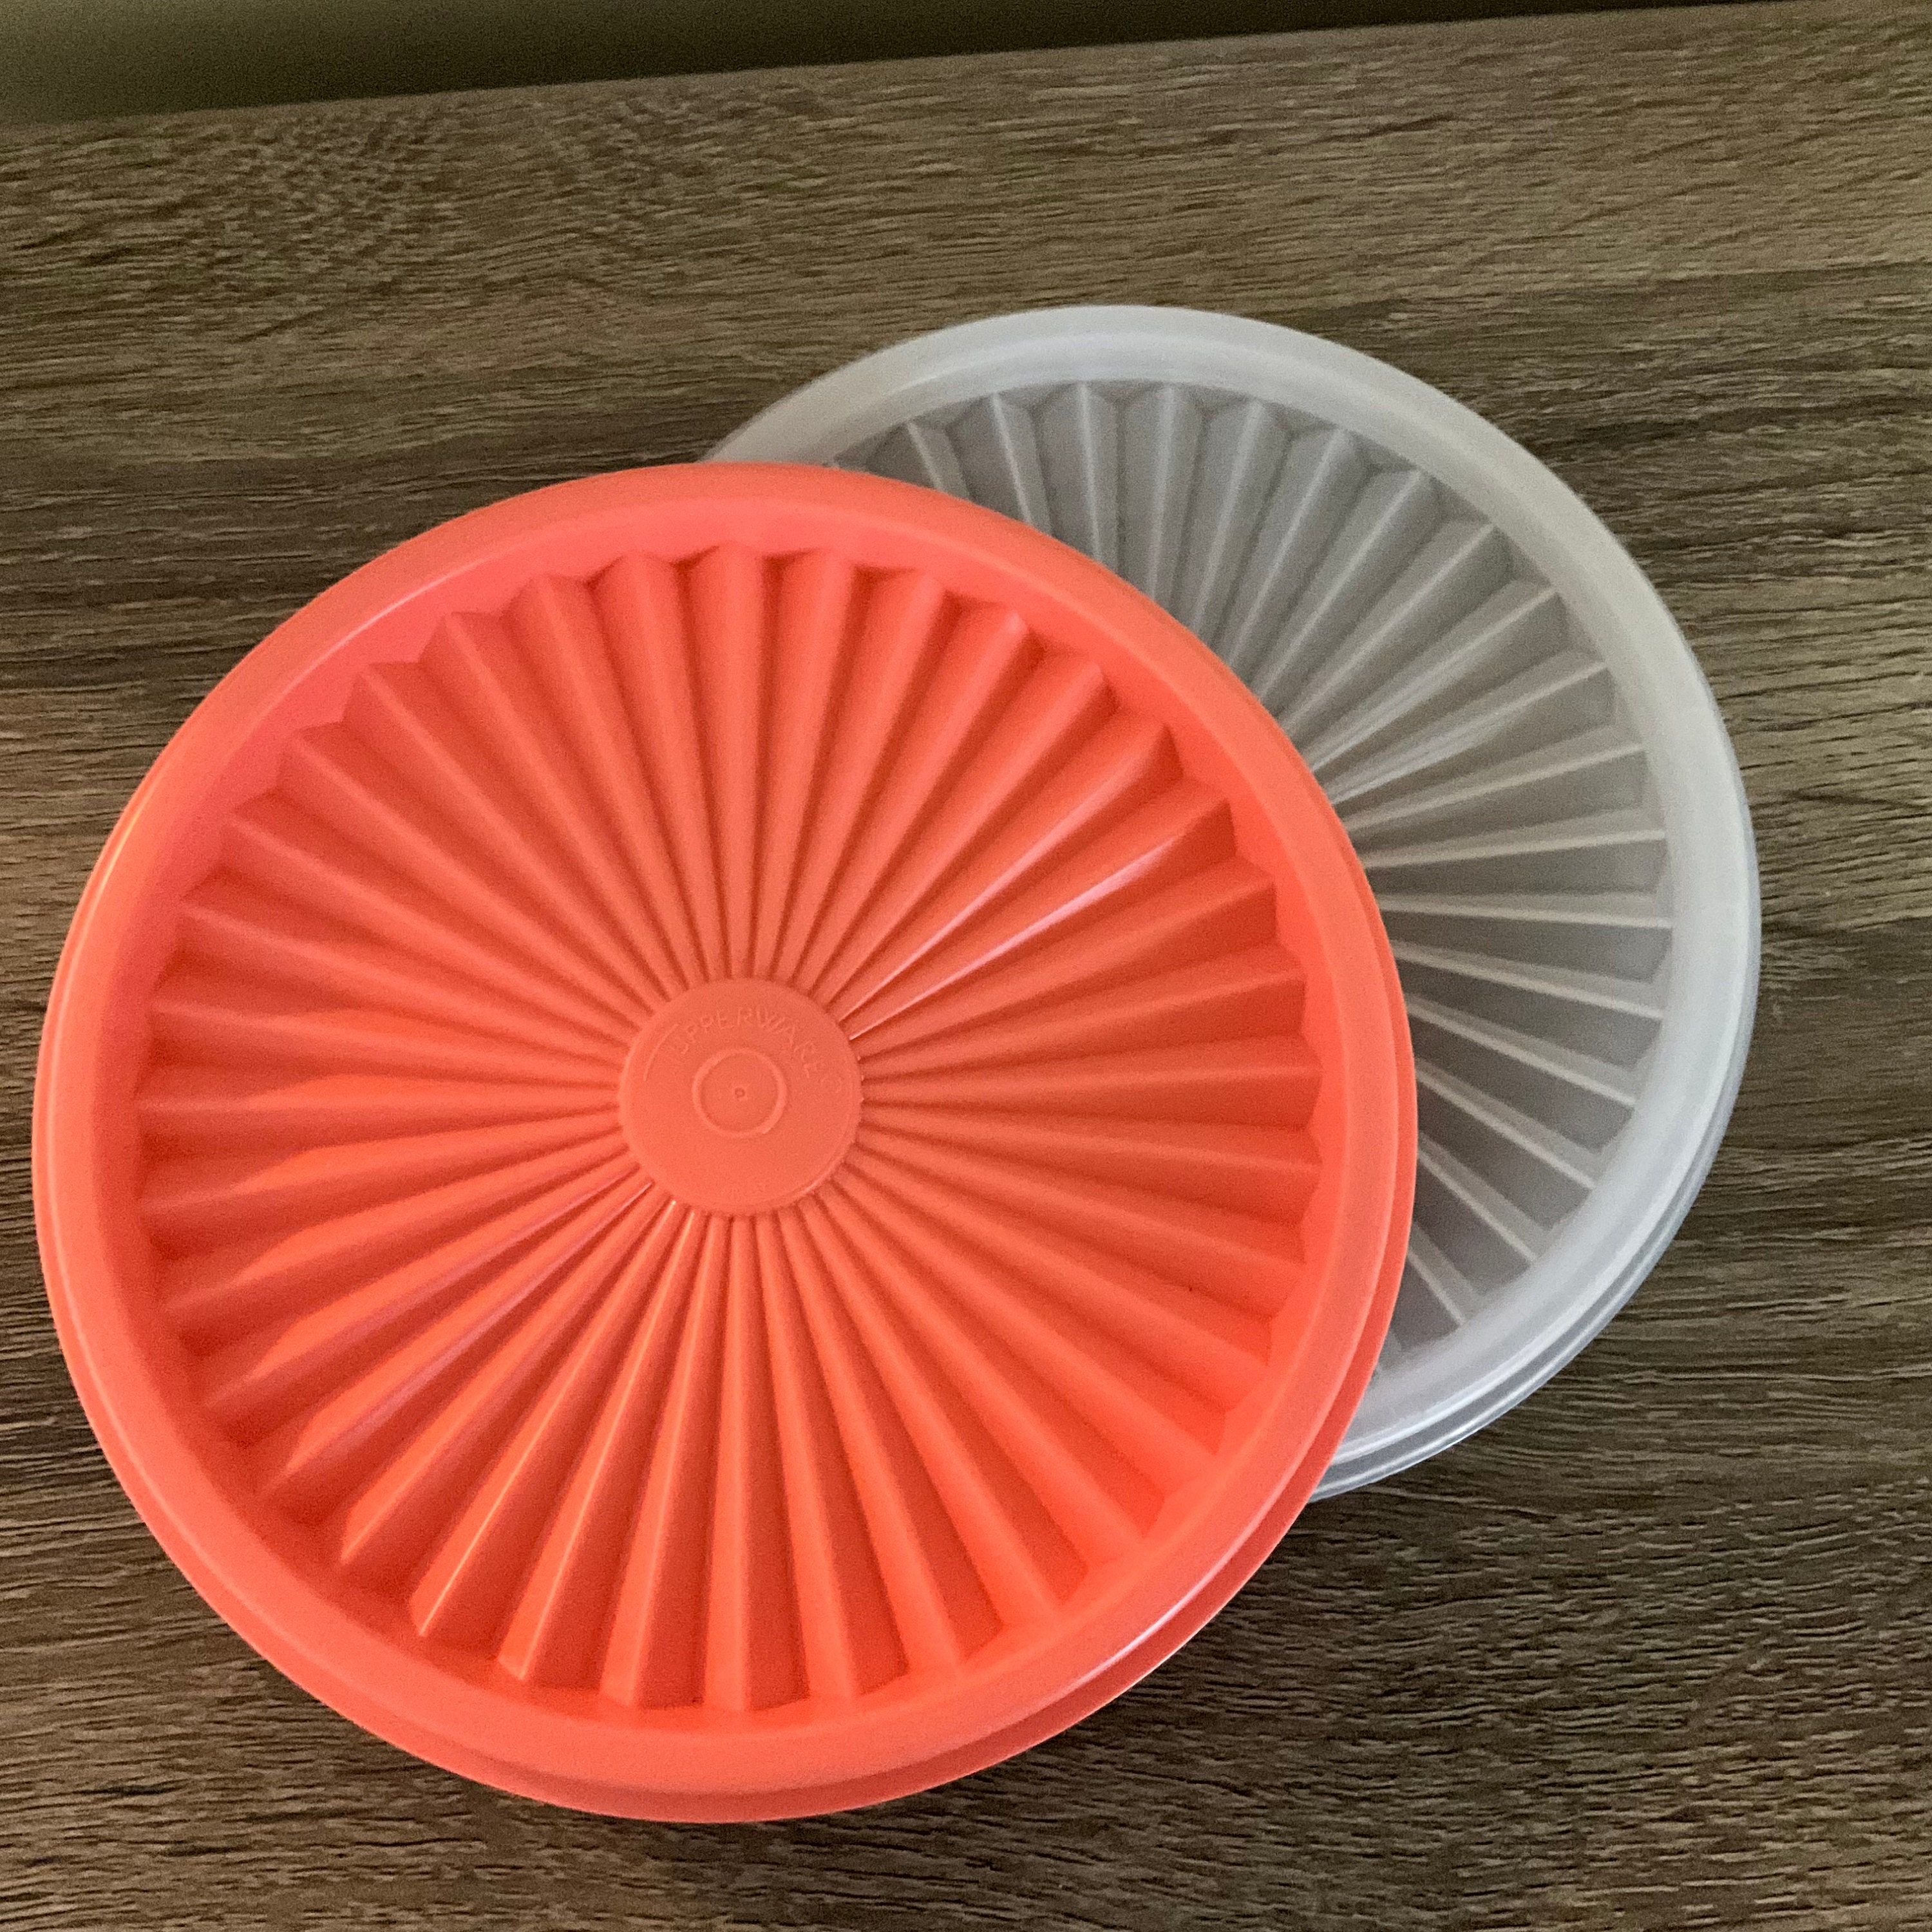 Tupperware Orange Duo 4 Bowl Set with Locking Seal Lids 5474, 5422, 5395